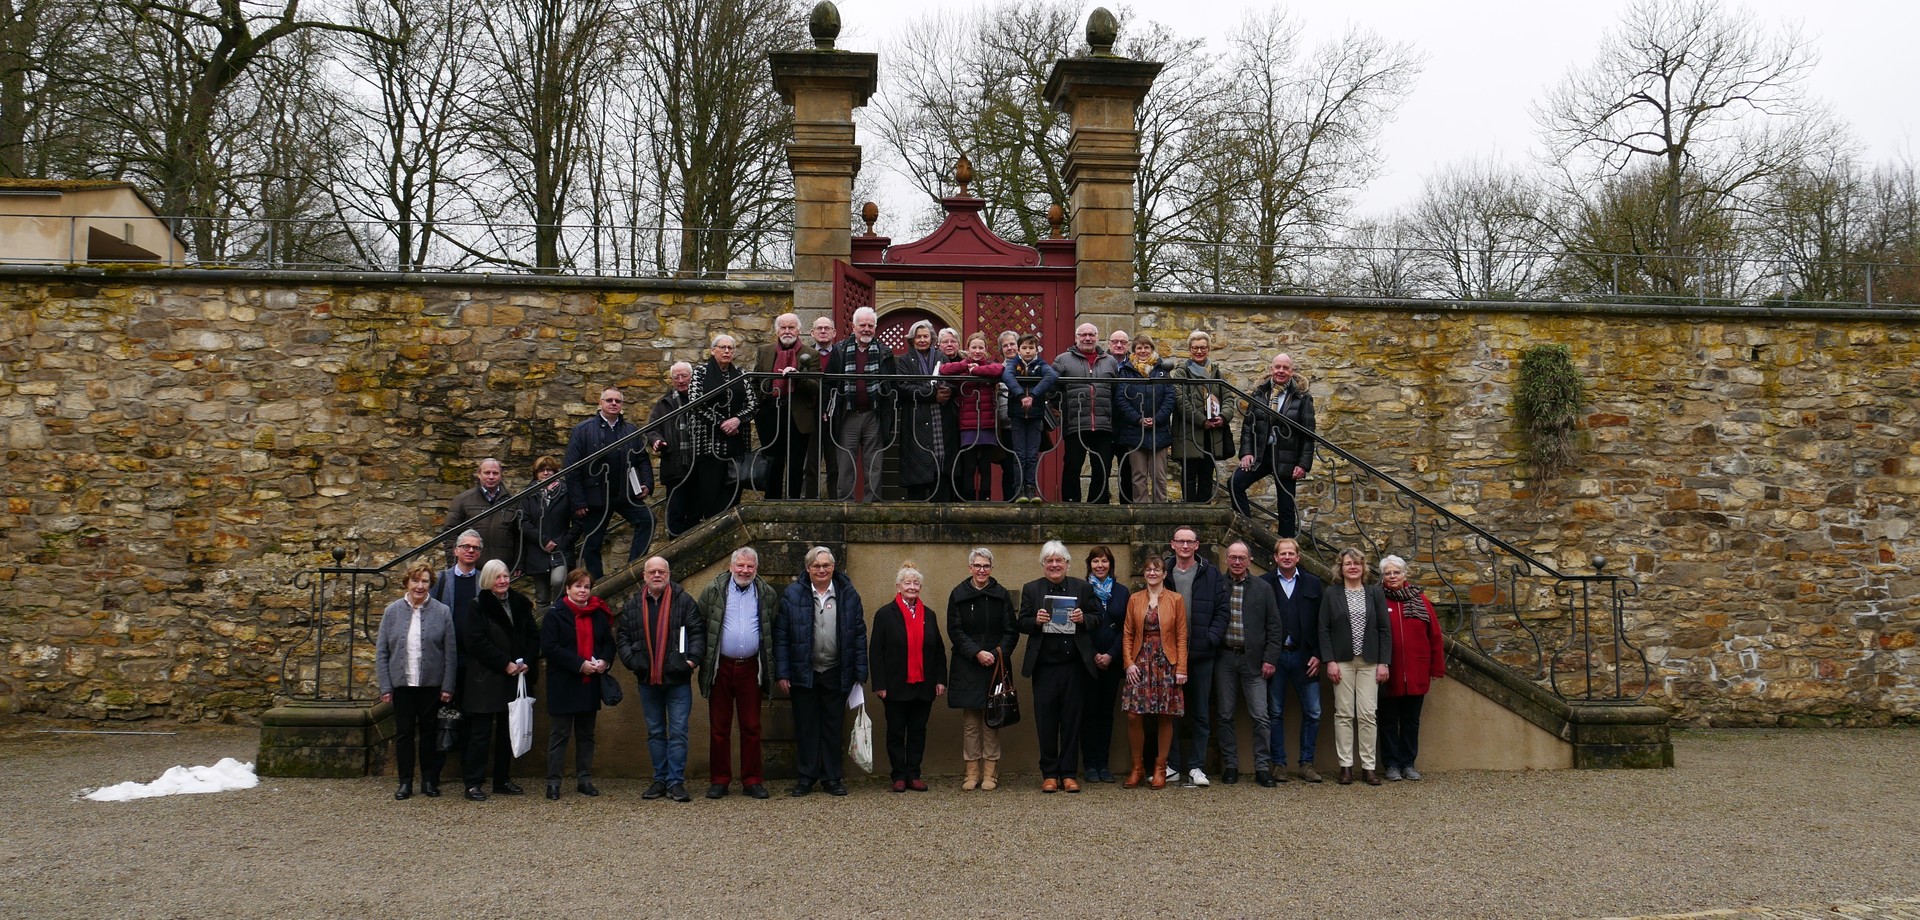 Rund dreißig Mitglieder vom Verein der Freunde stehen im Ehrenhof und schauen lächelnd in die Kamera.